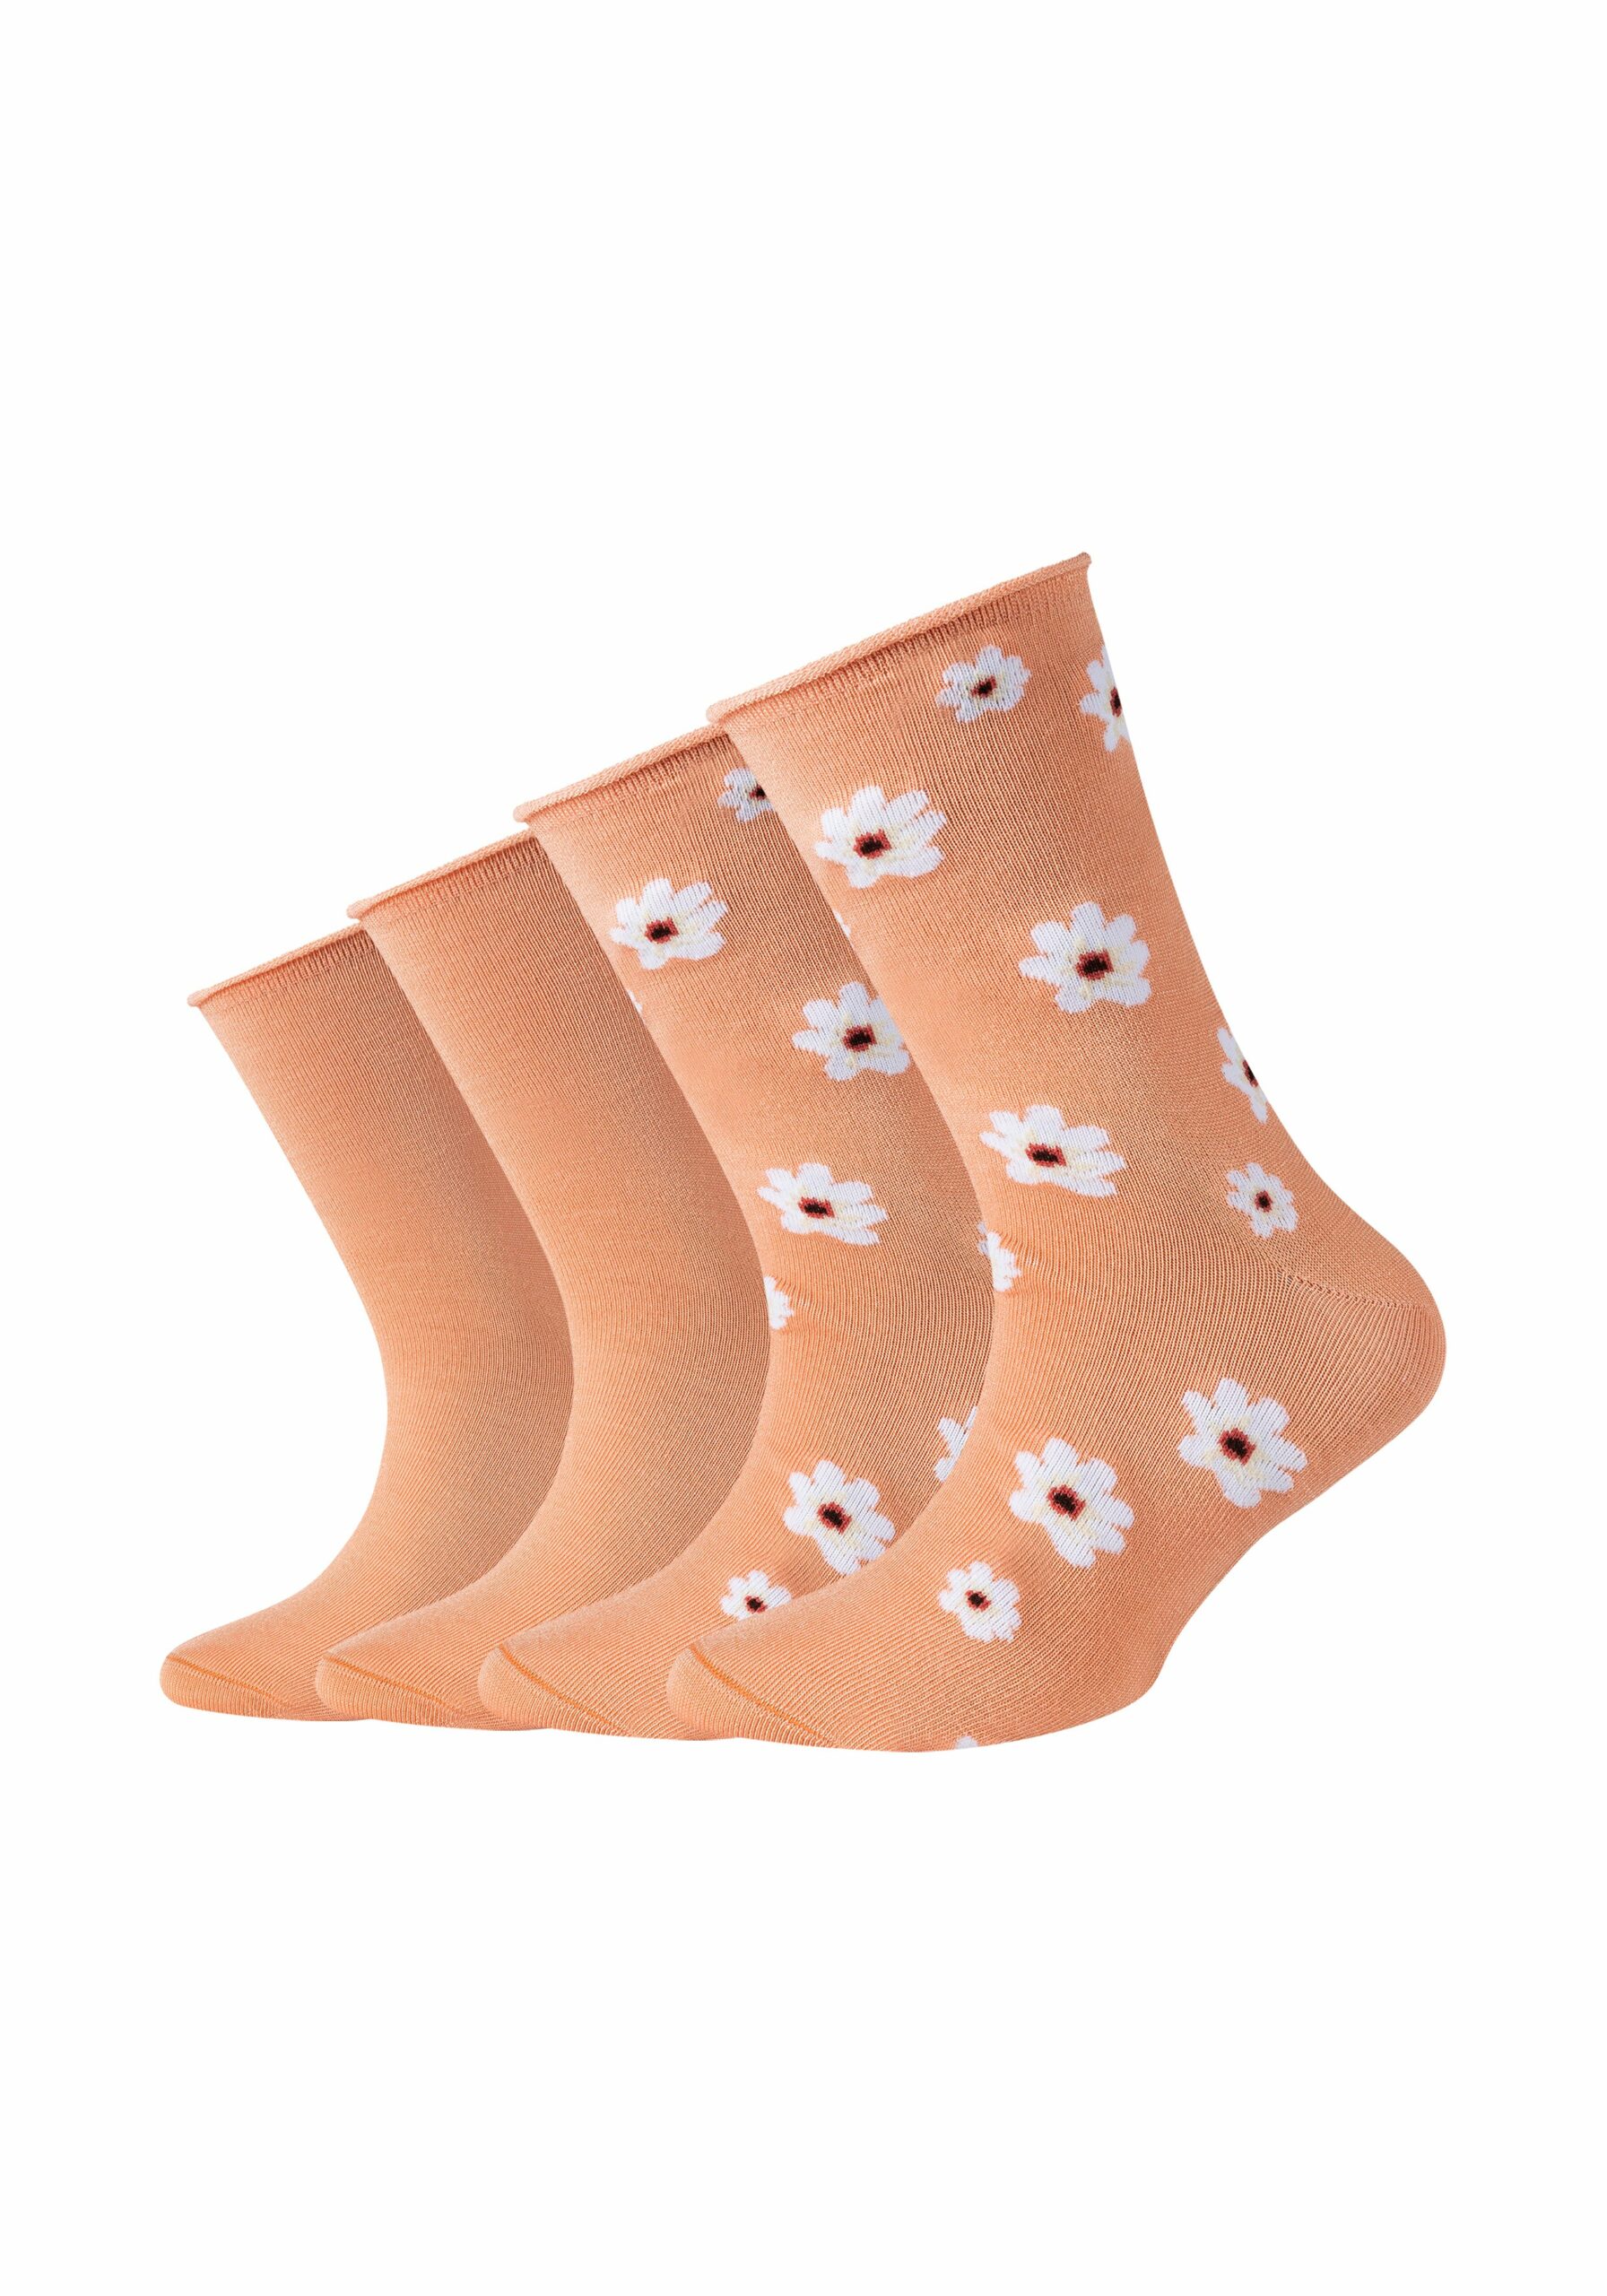 s.Oliver Kinder Socken Silky Touch Flower 4er Pack peach nectar kaufen bei